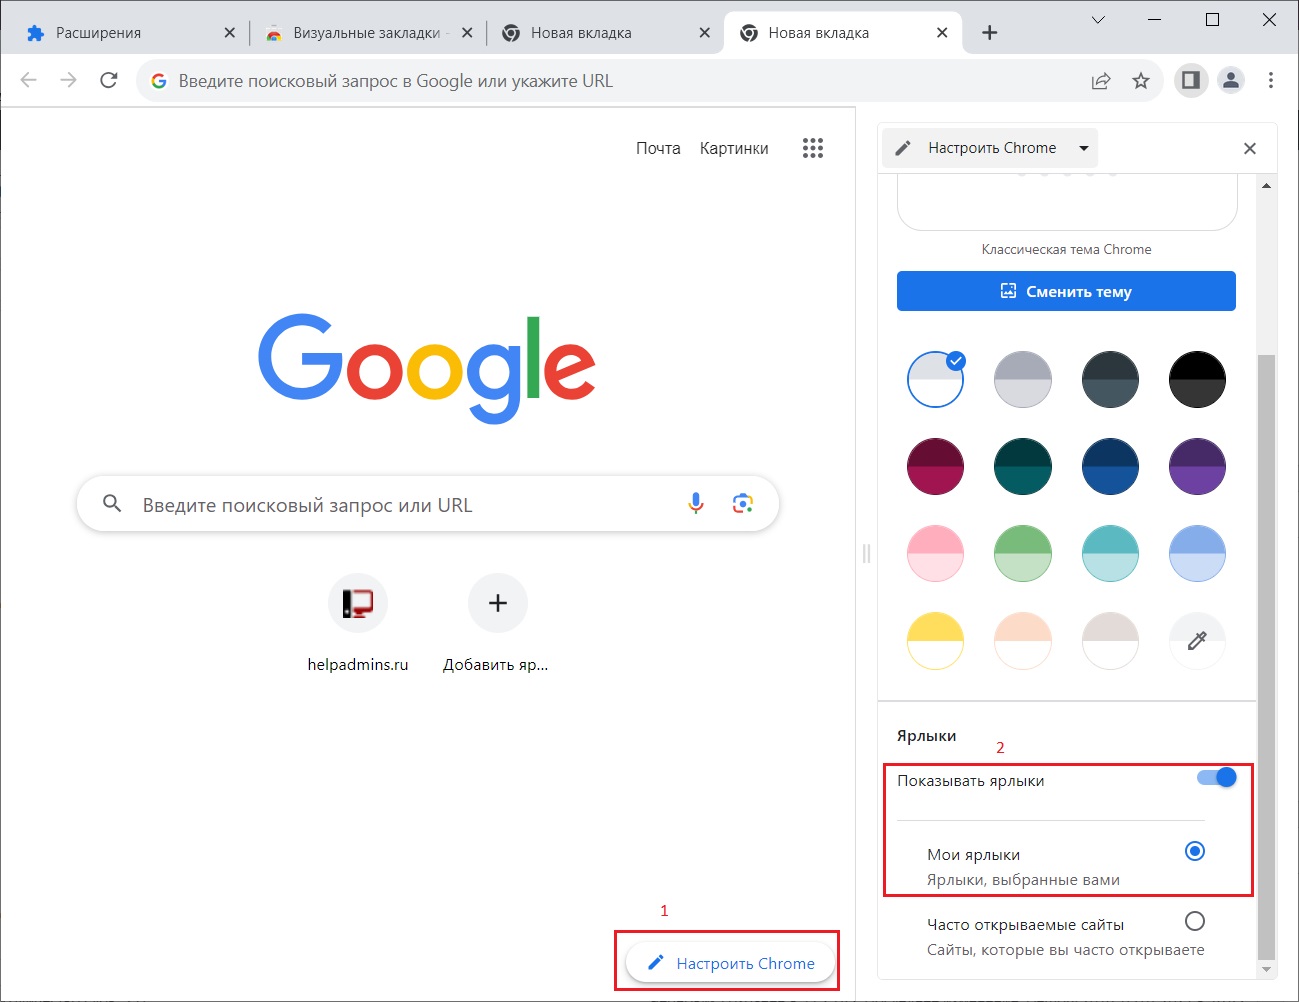 Как сделать Поиск luchistii-sudak.ru стартовой страницей в Google Chrome? — Поиск